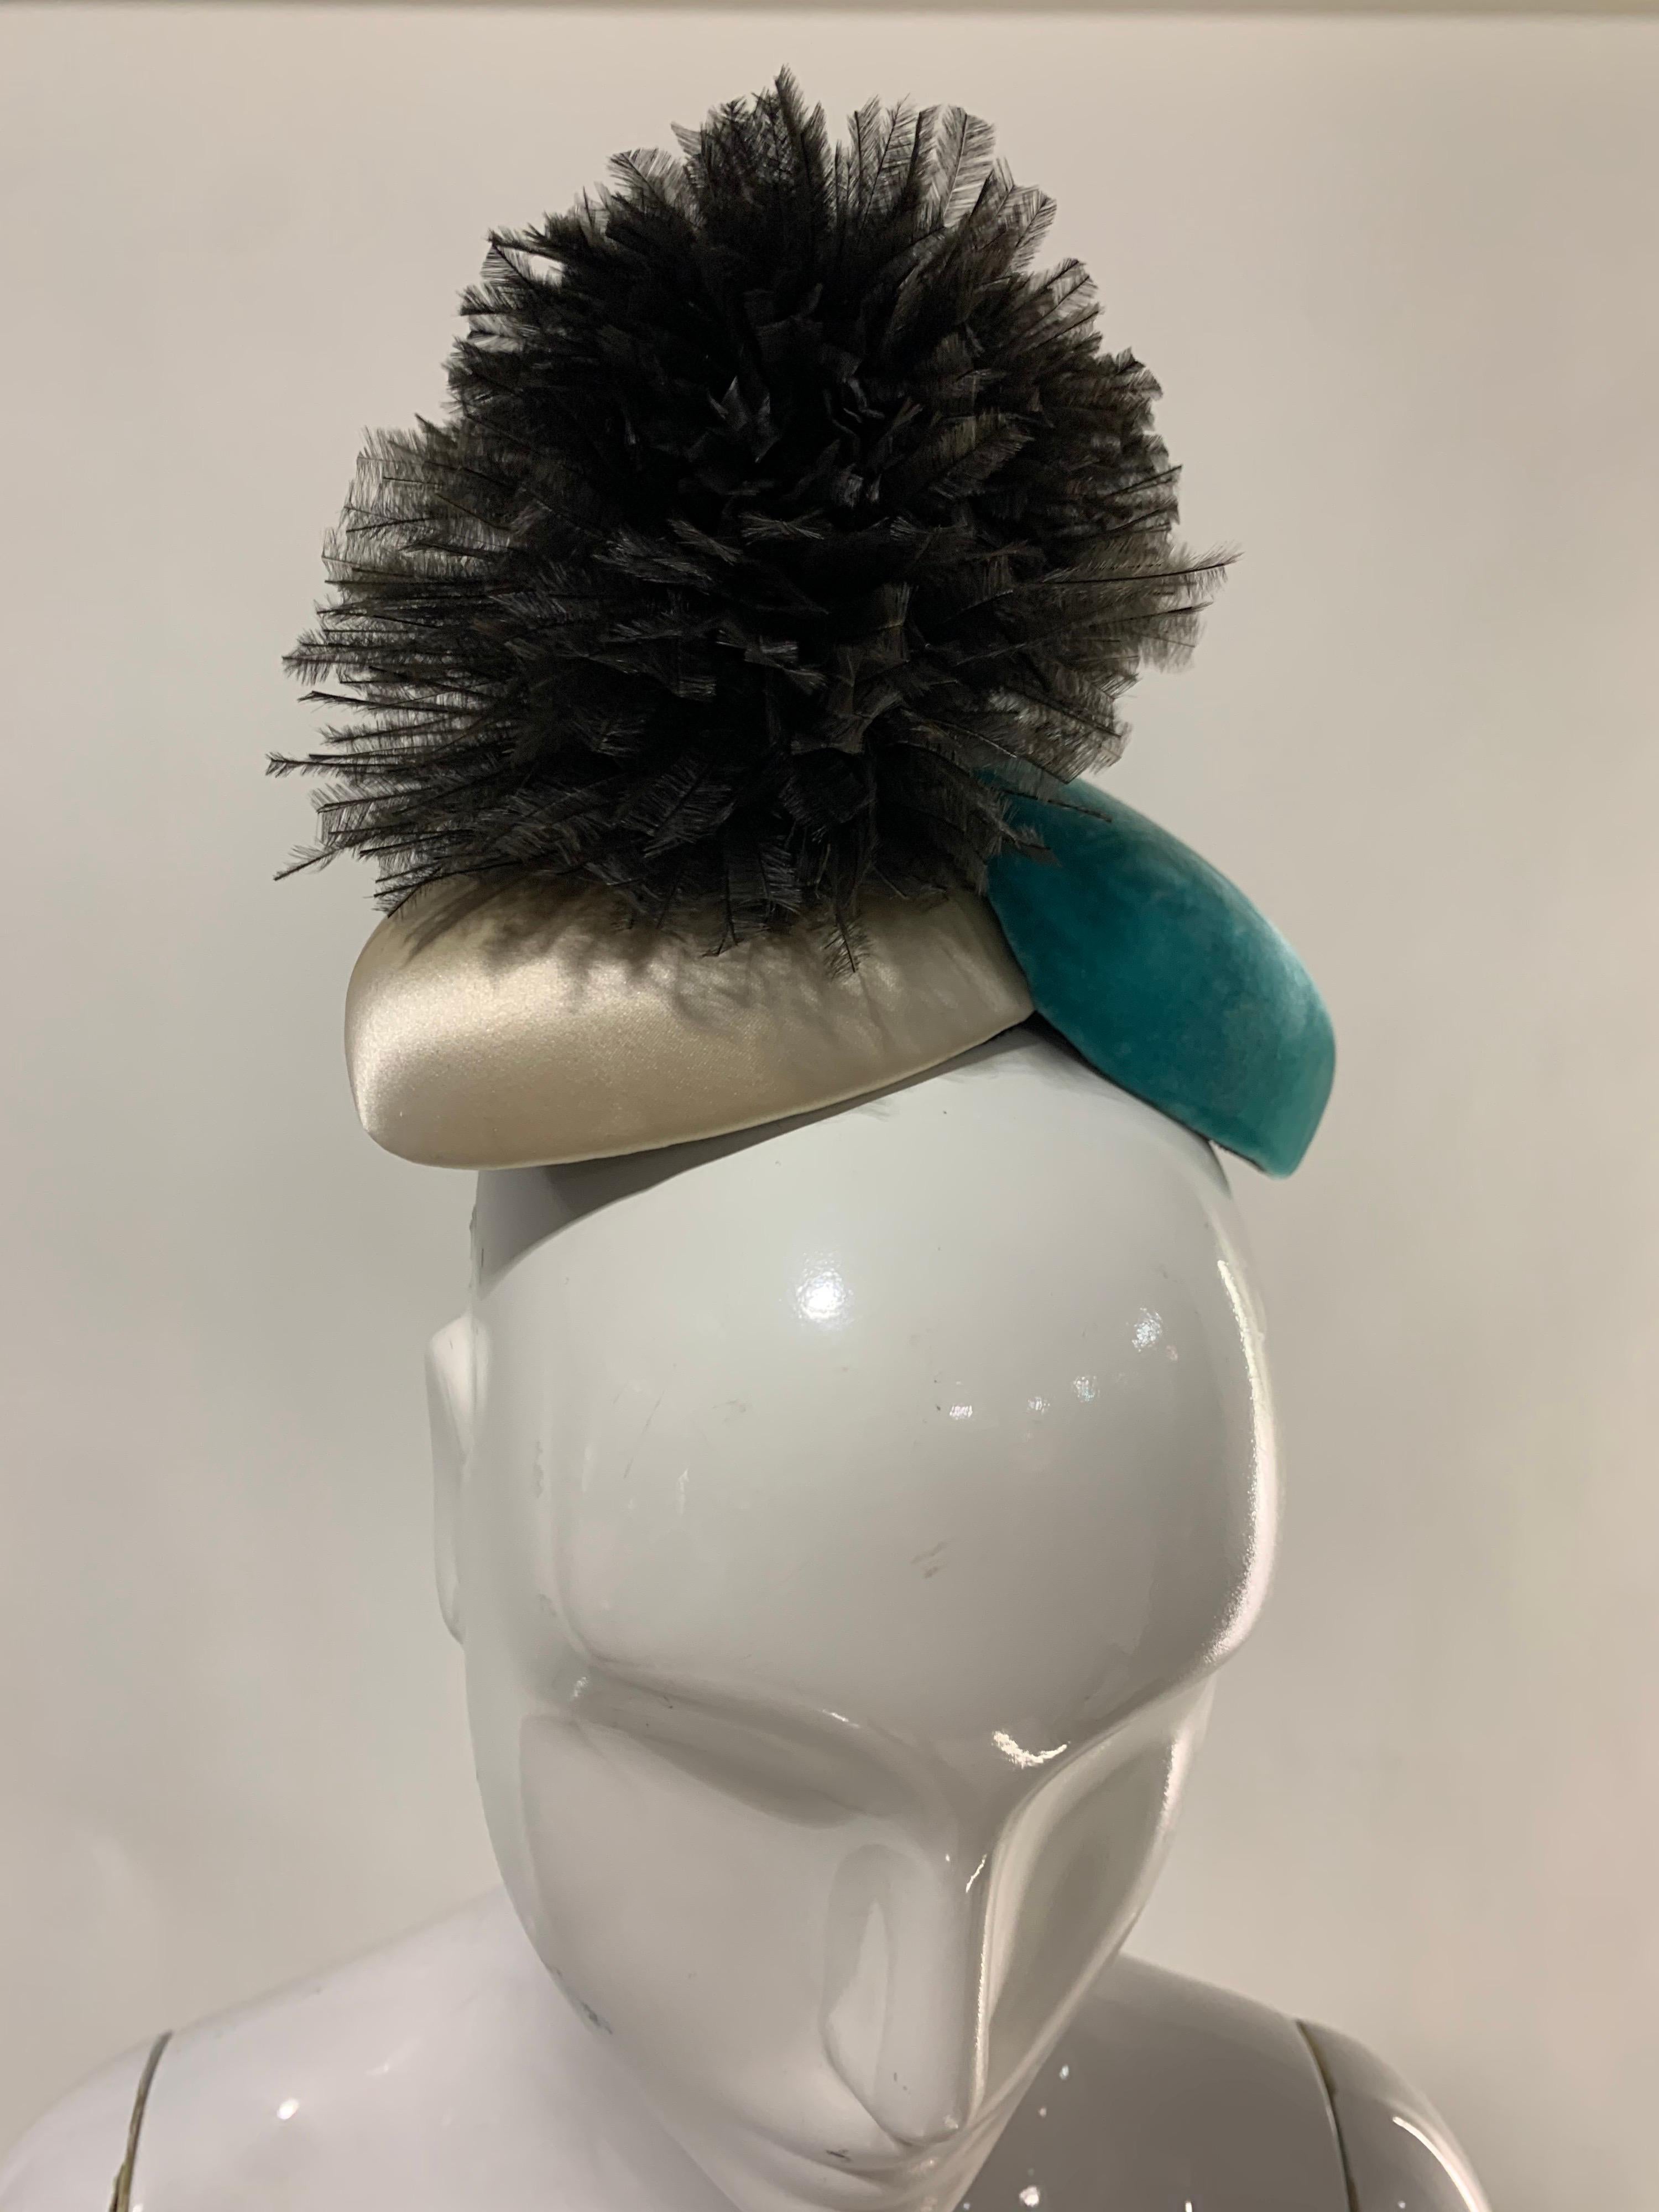 Noir Bonwit Teller - Chapeau de jouet d'avant-garde des années 1950 en turquoise et ivoire avec pouf noir  en vente